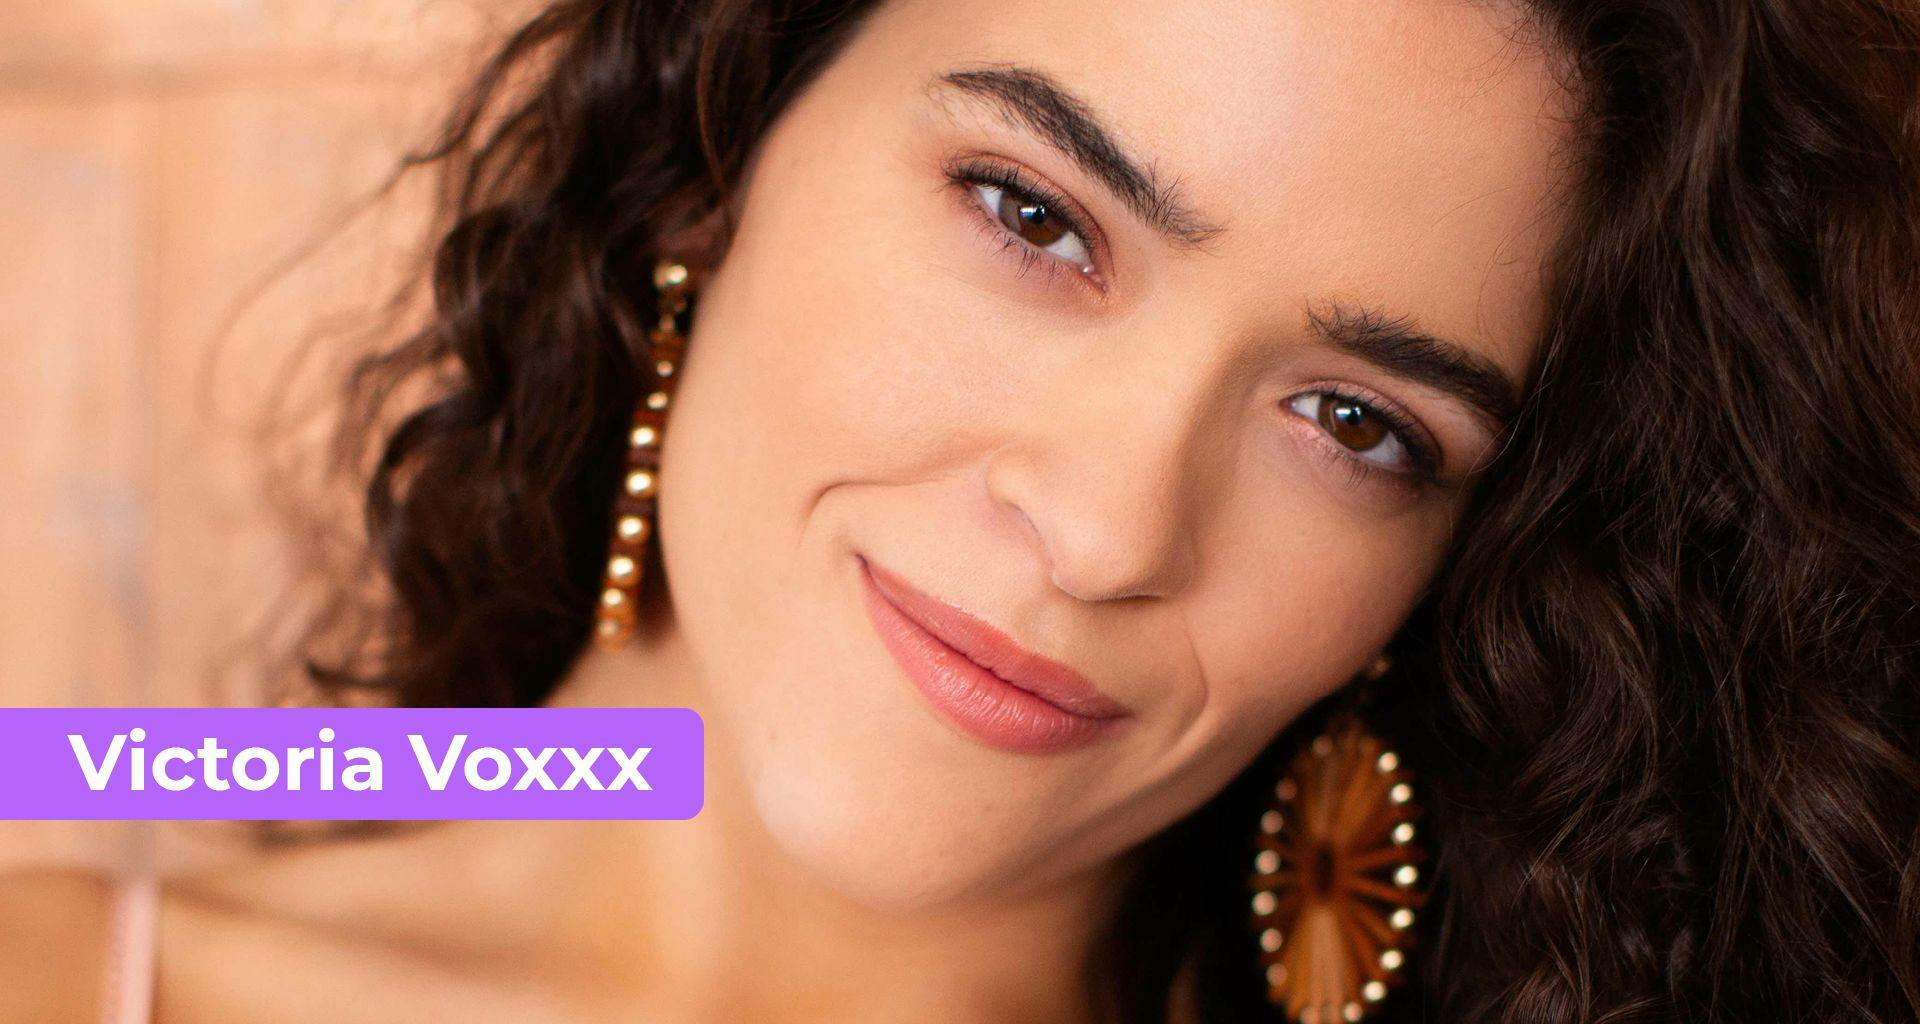 Victoria Voxxx - Performer Video